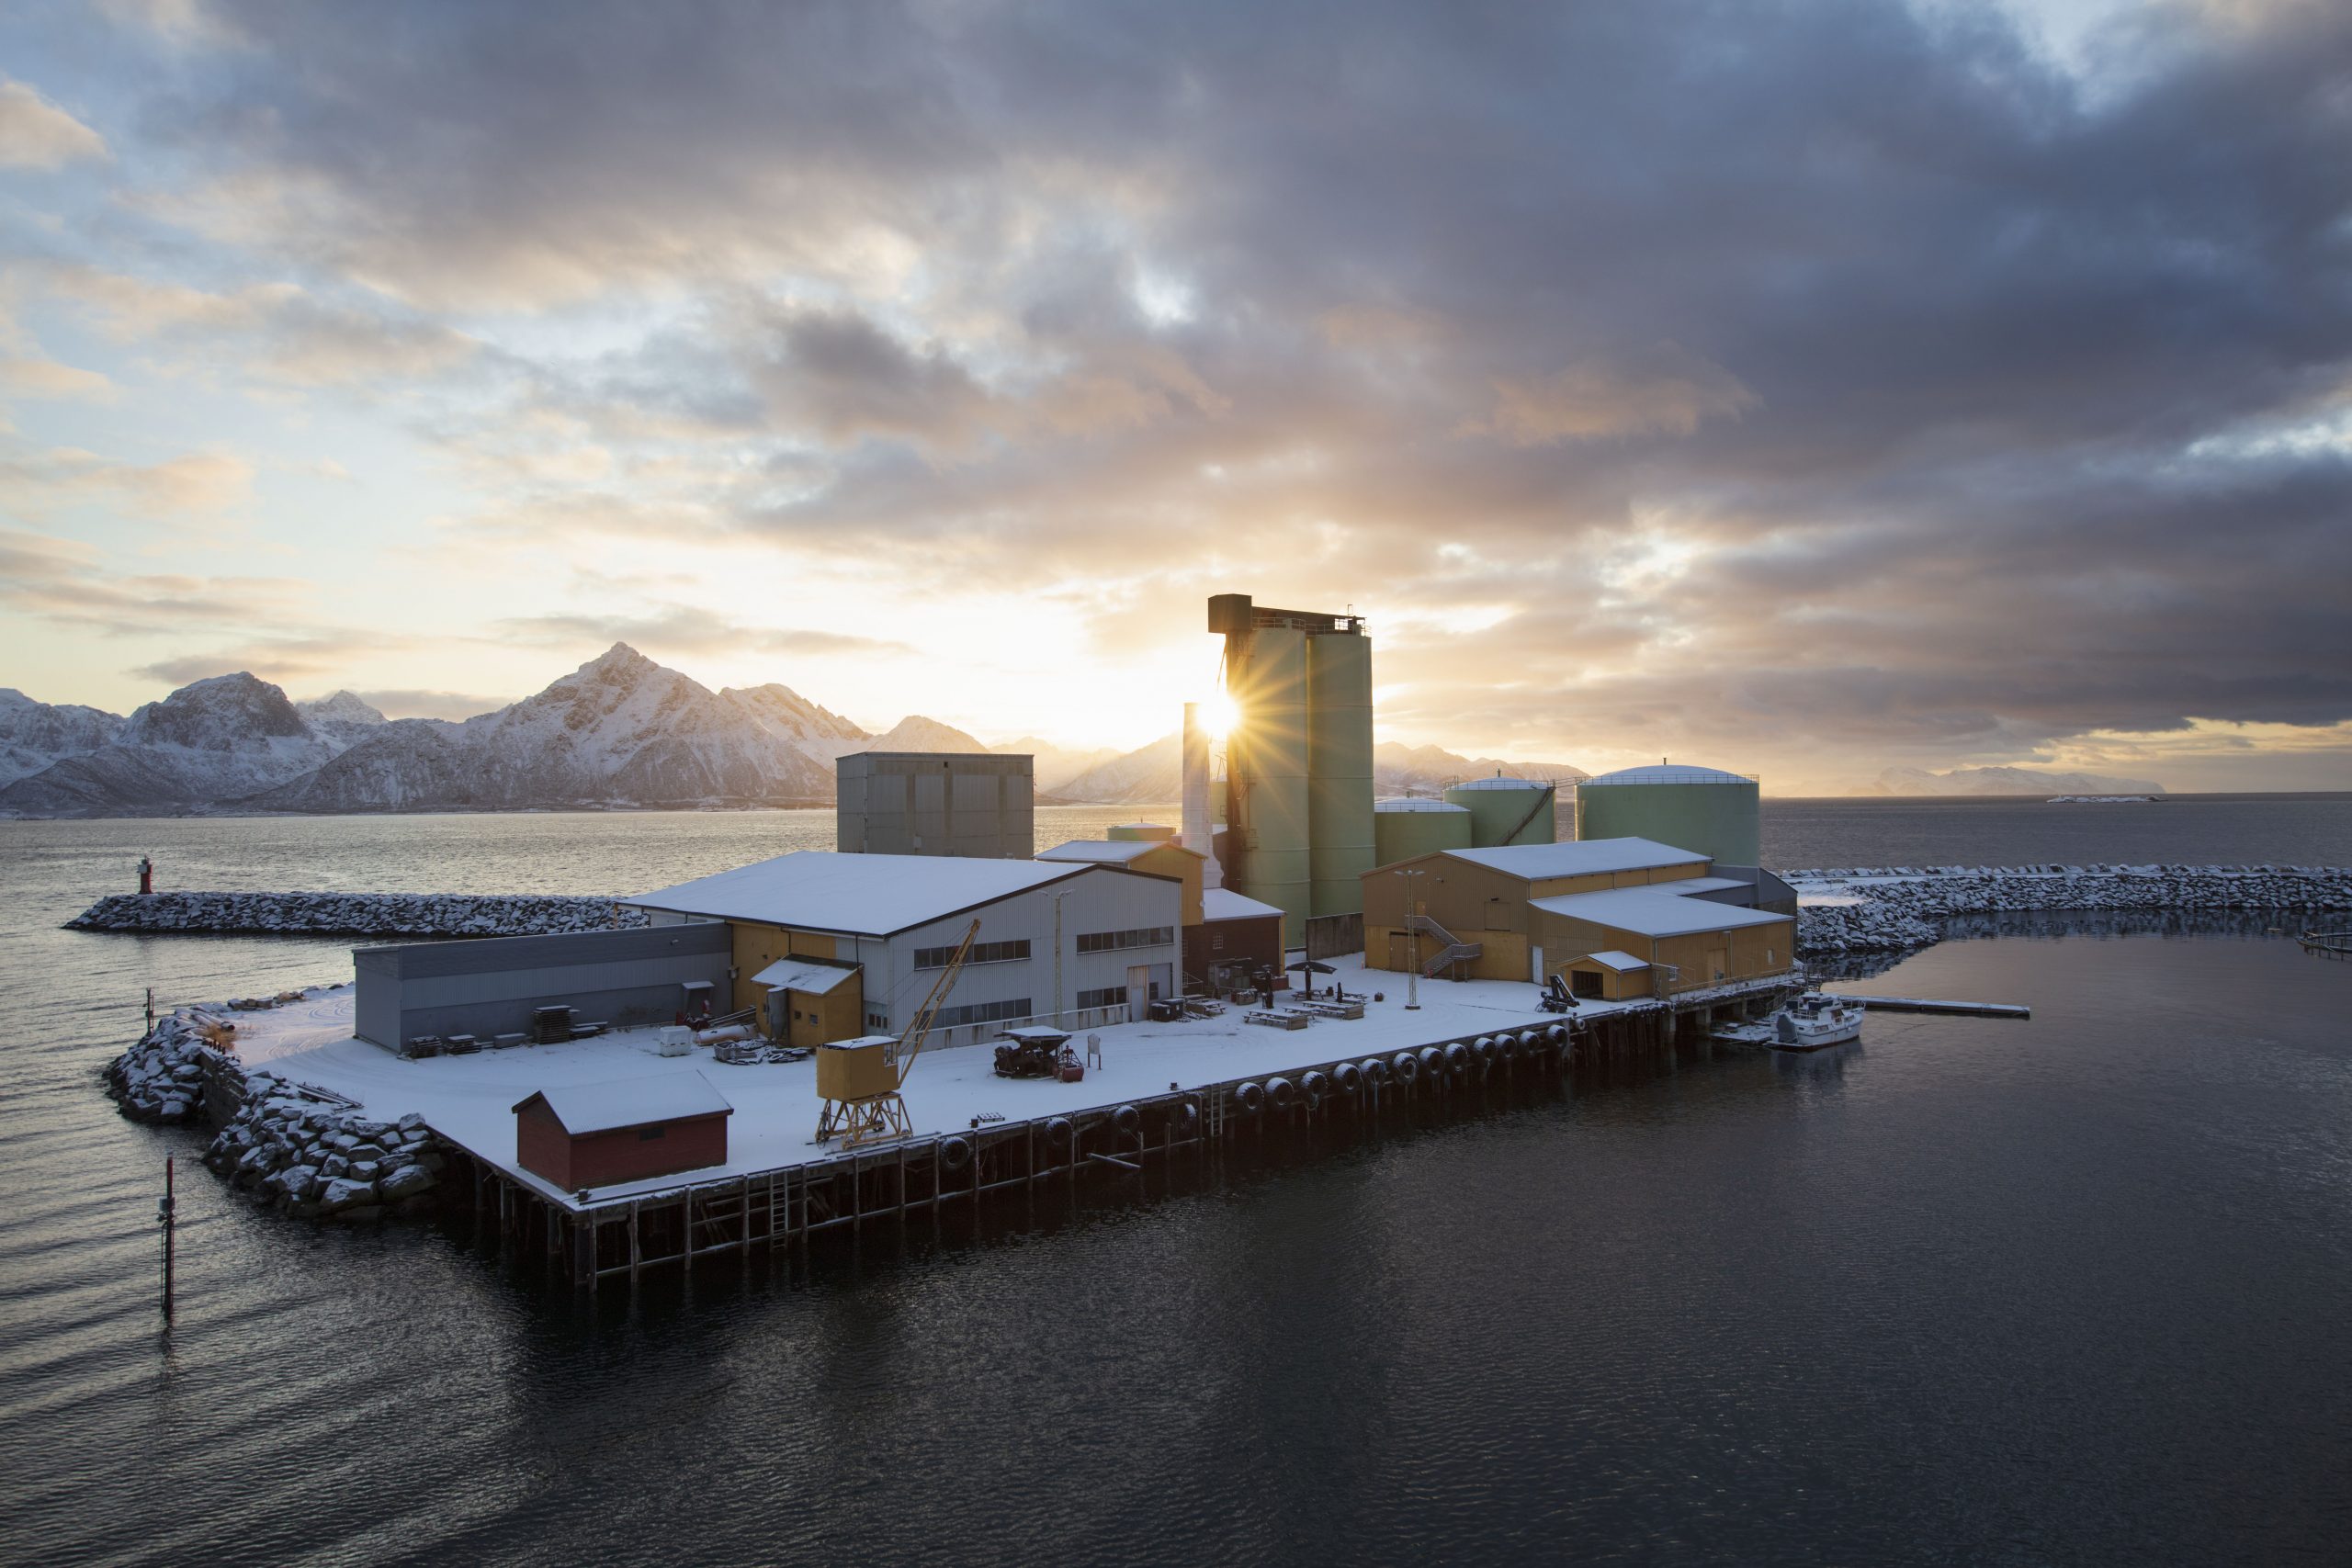 Bilde viser Neptun Sildoljefabrik som ble etablert i 1910 og ligger på Svinøya, i Hadsel kommune, Nordland fylke. fotograf er Trond Isaksen